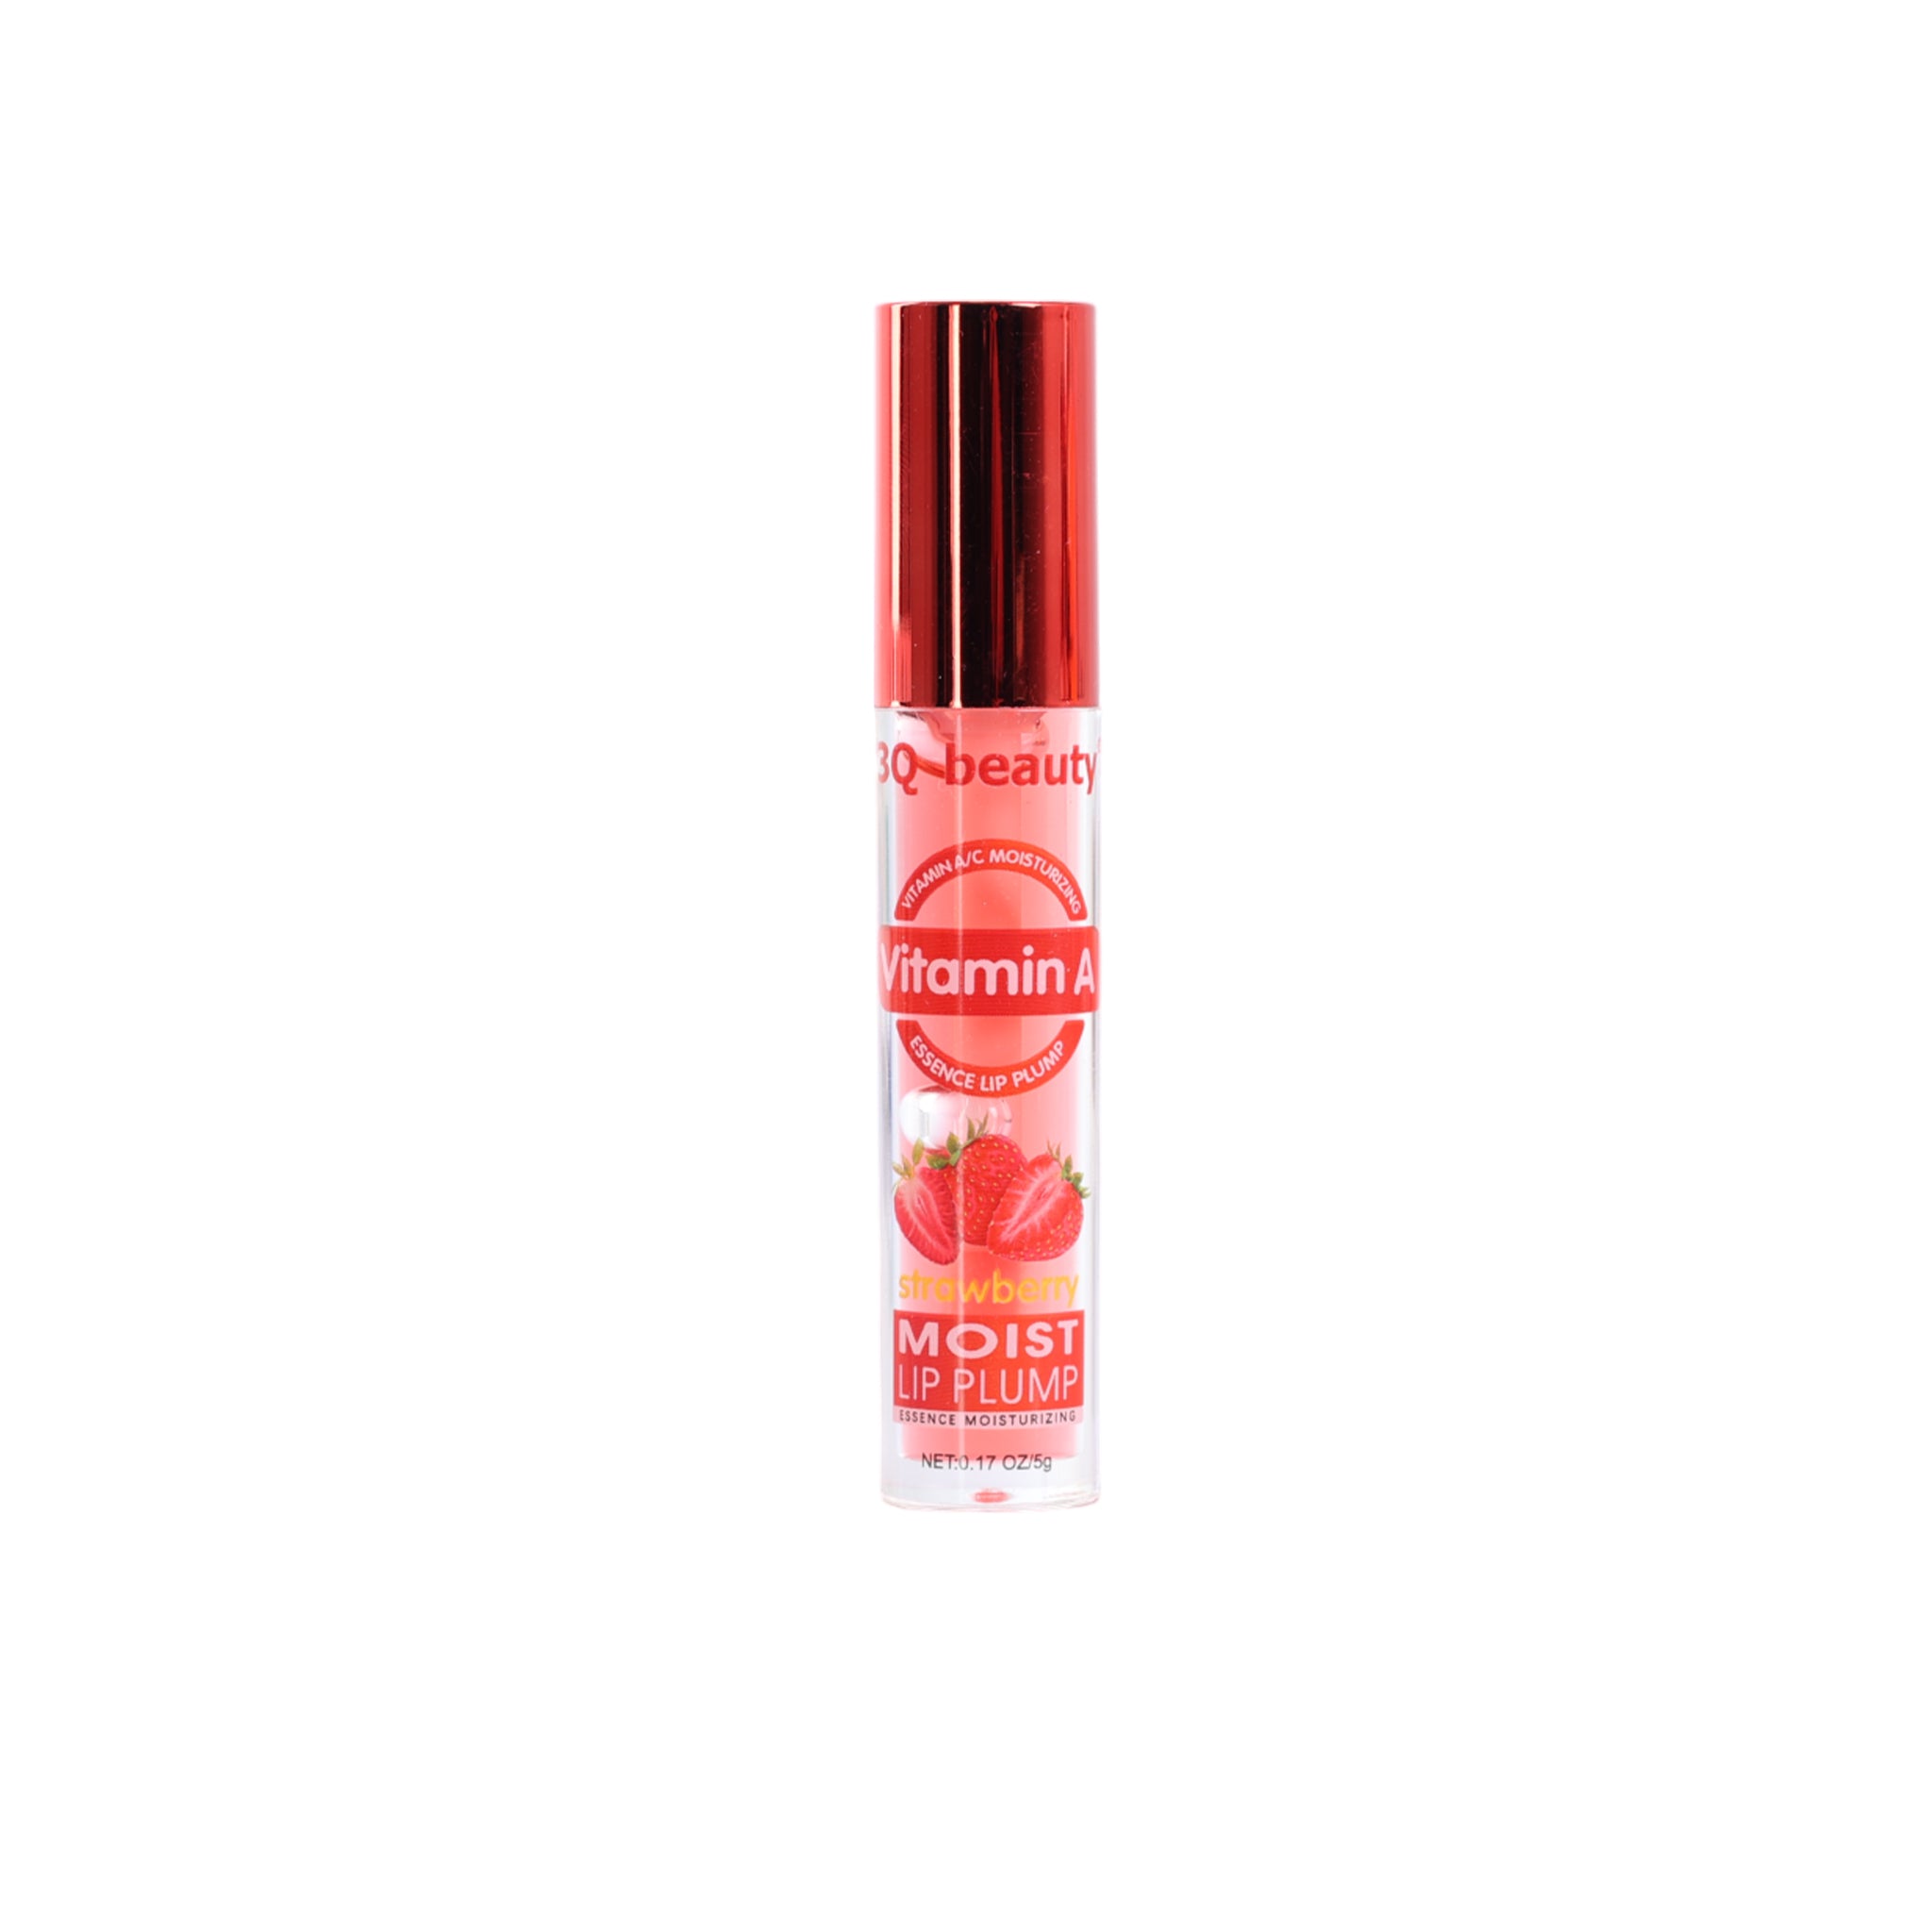 3Q Beauty Lip Plump Peach